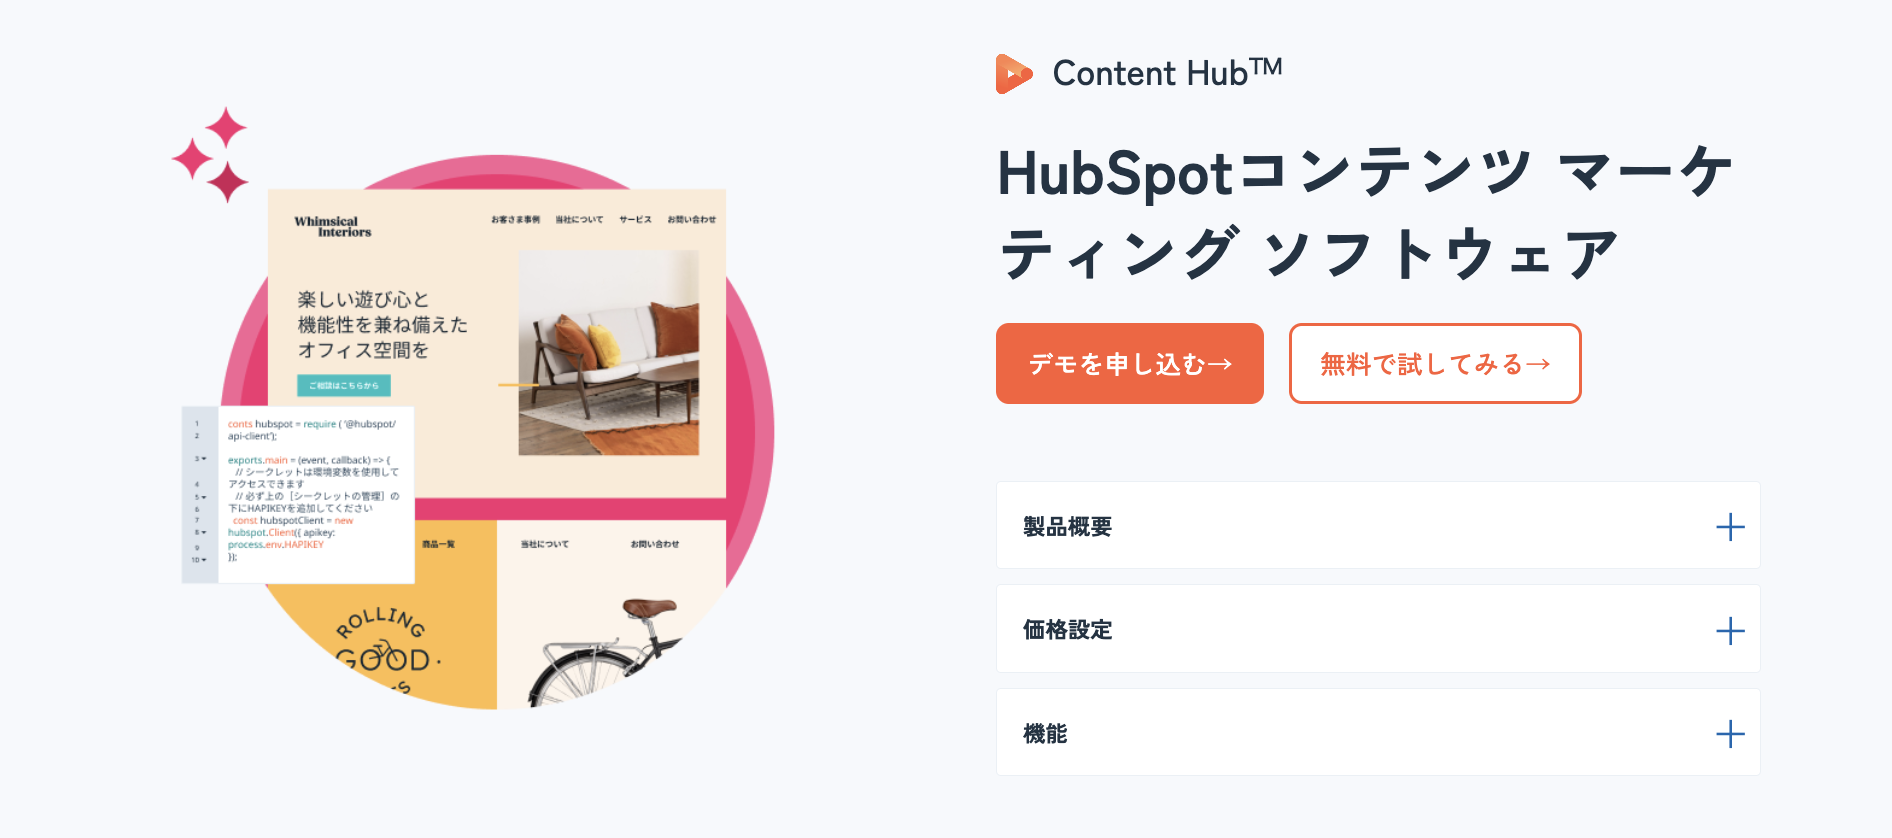 HubSpot Content Hub